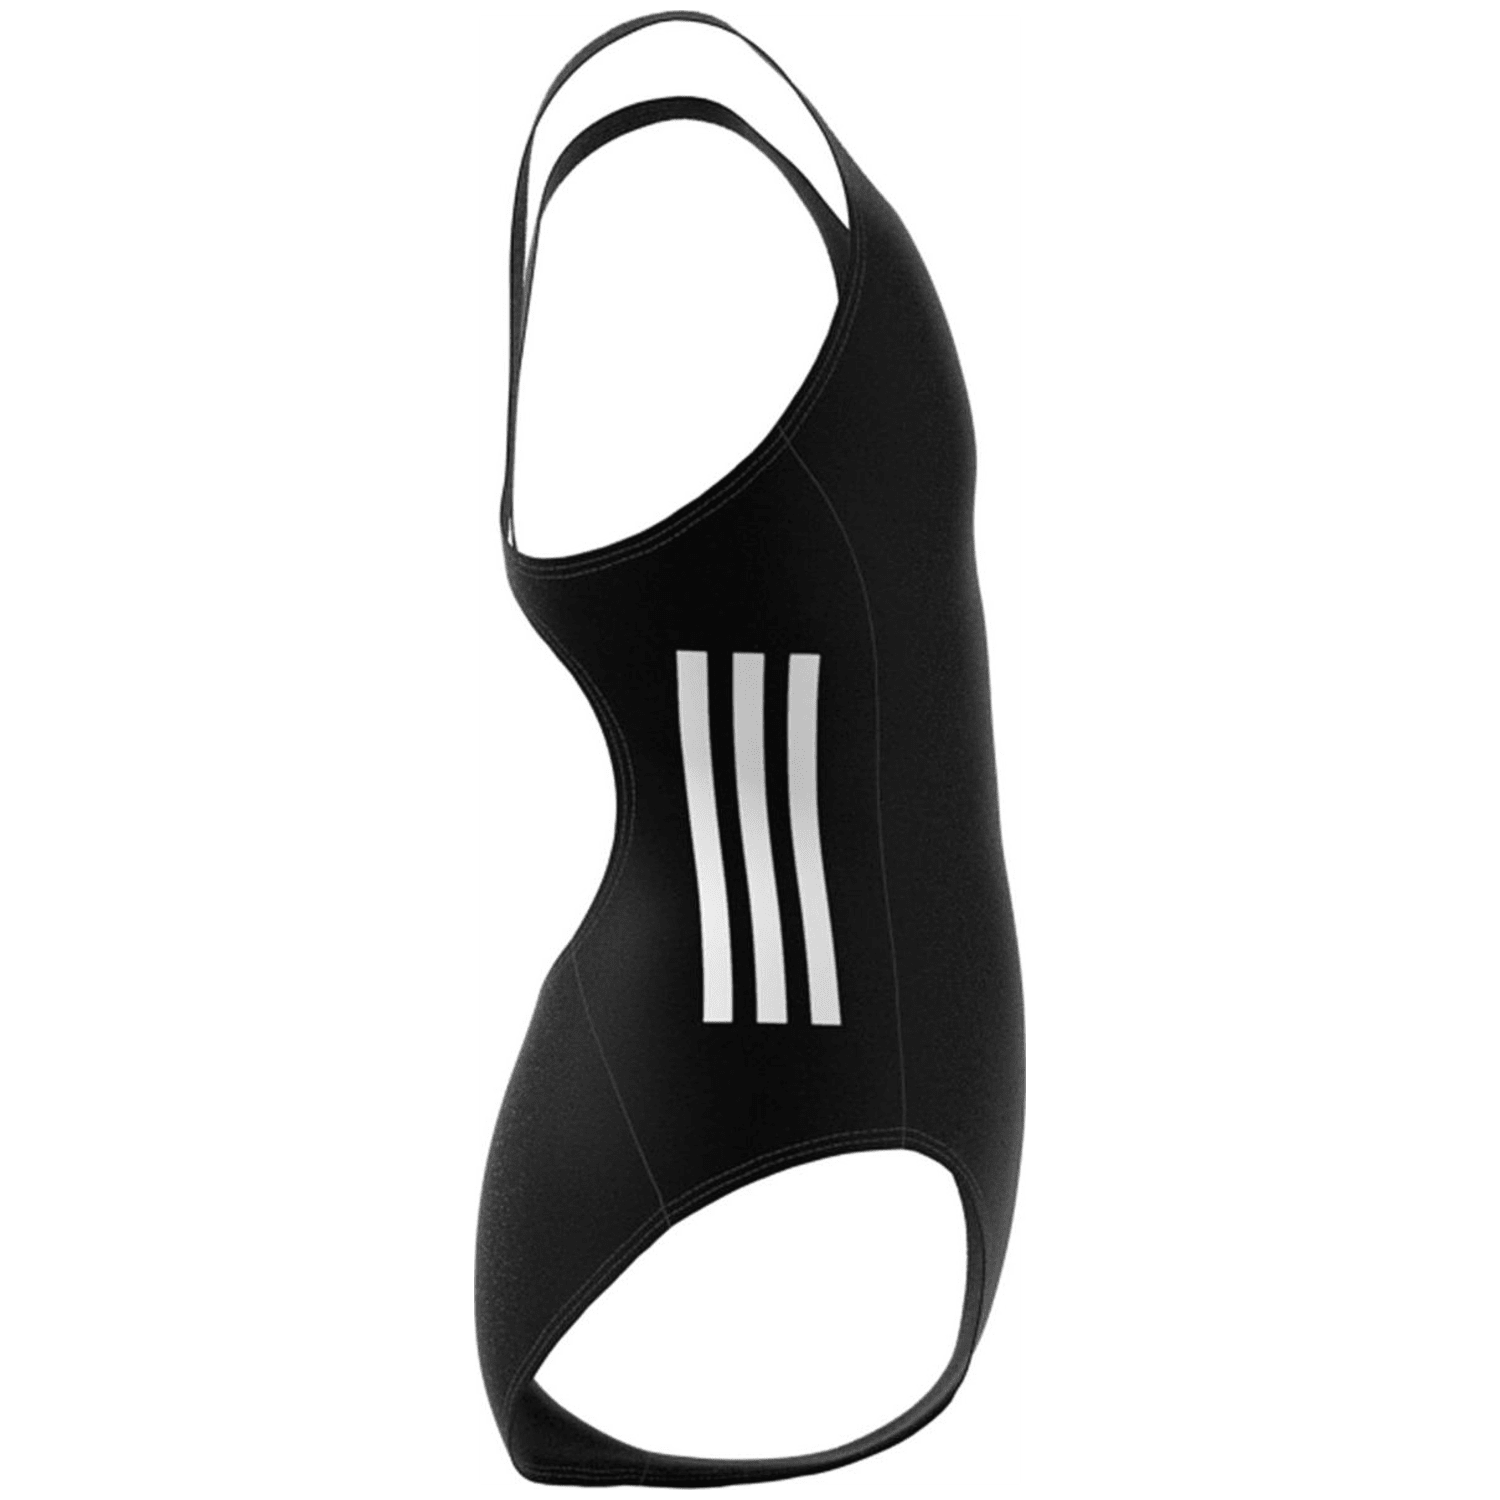 Adidas Cut 3-Streifen Badeanzug Mädchen